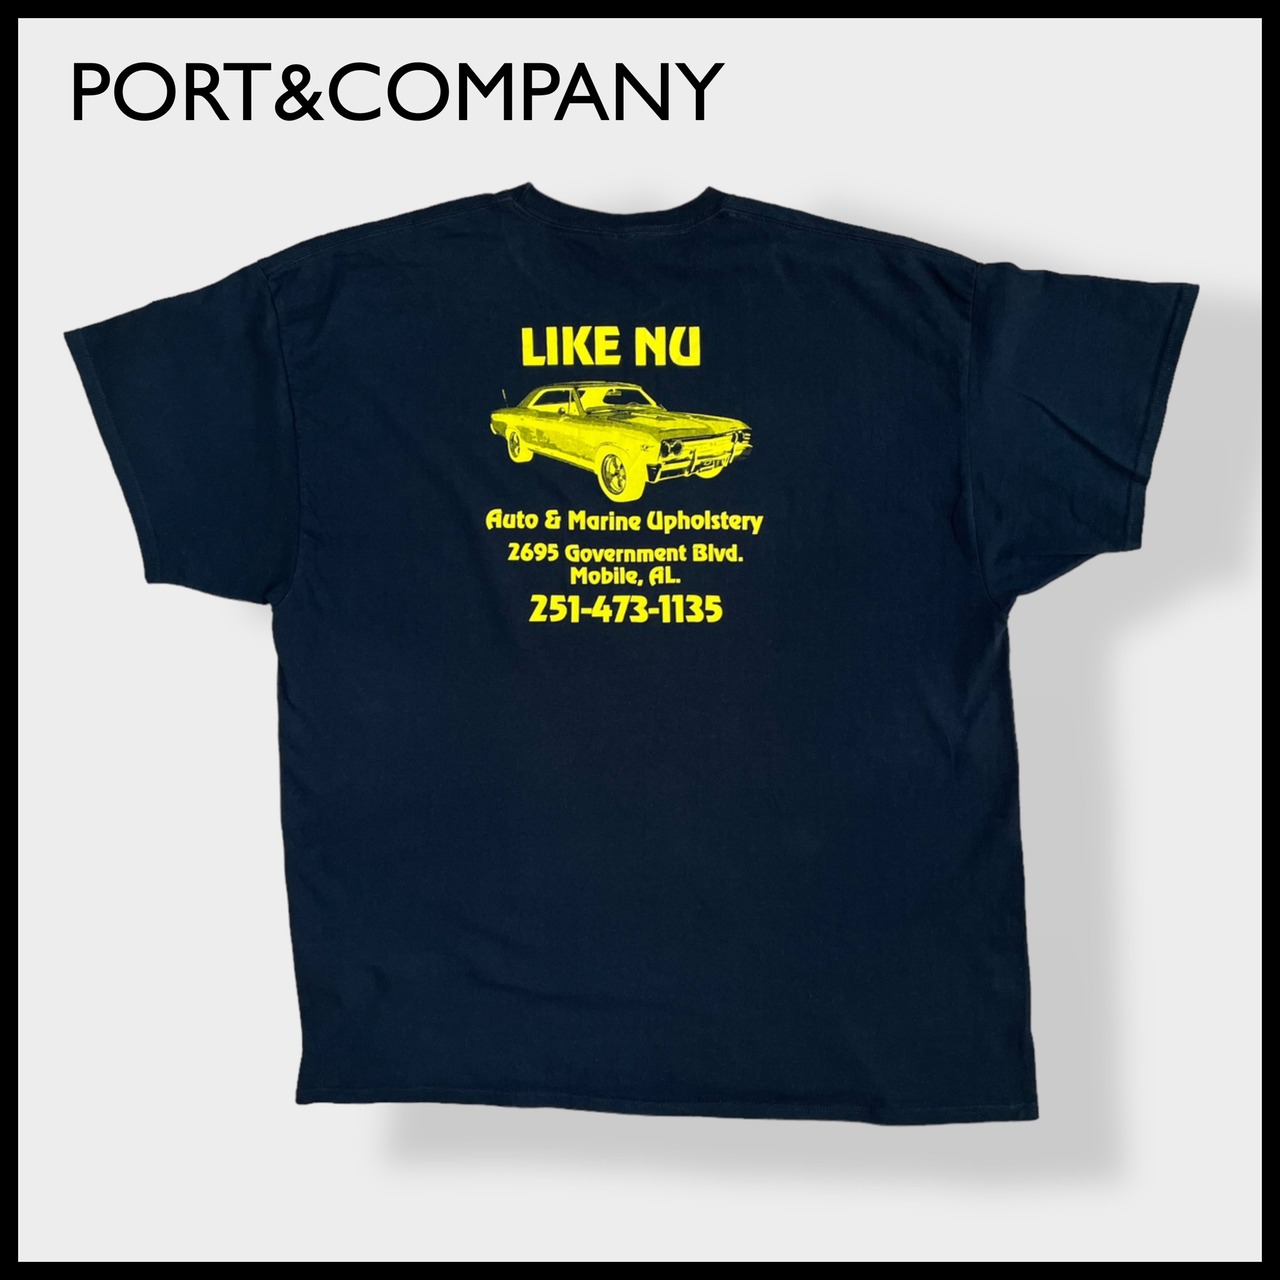 【PORT&COMPANY】3XL Tシャツ ビッグシルエット ビッグサイズ 企業系 バックプリント ロゴ 車 半袖 黒 US古着